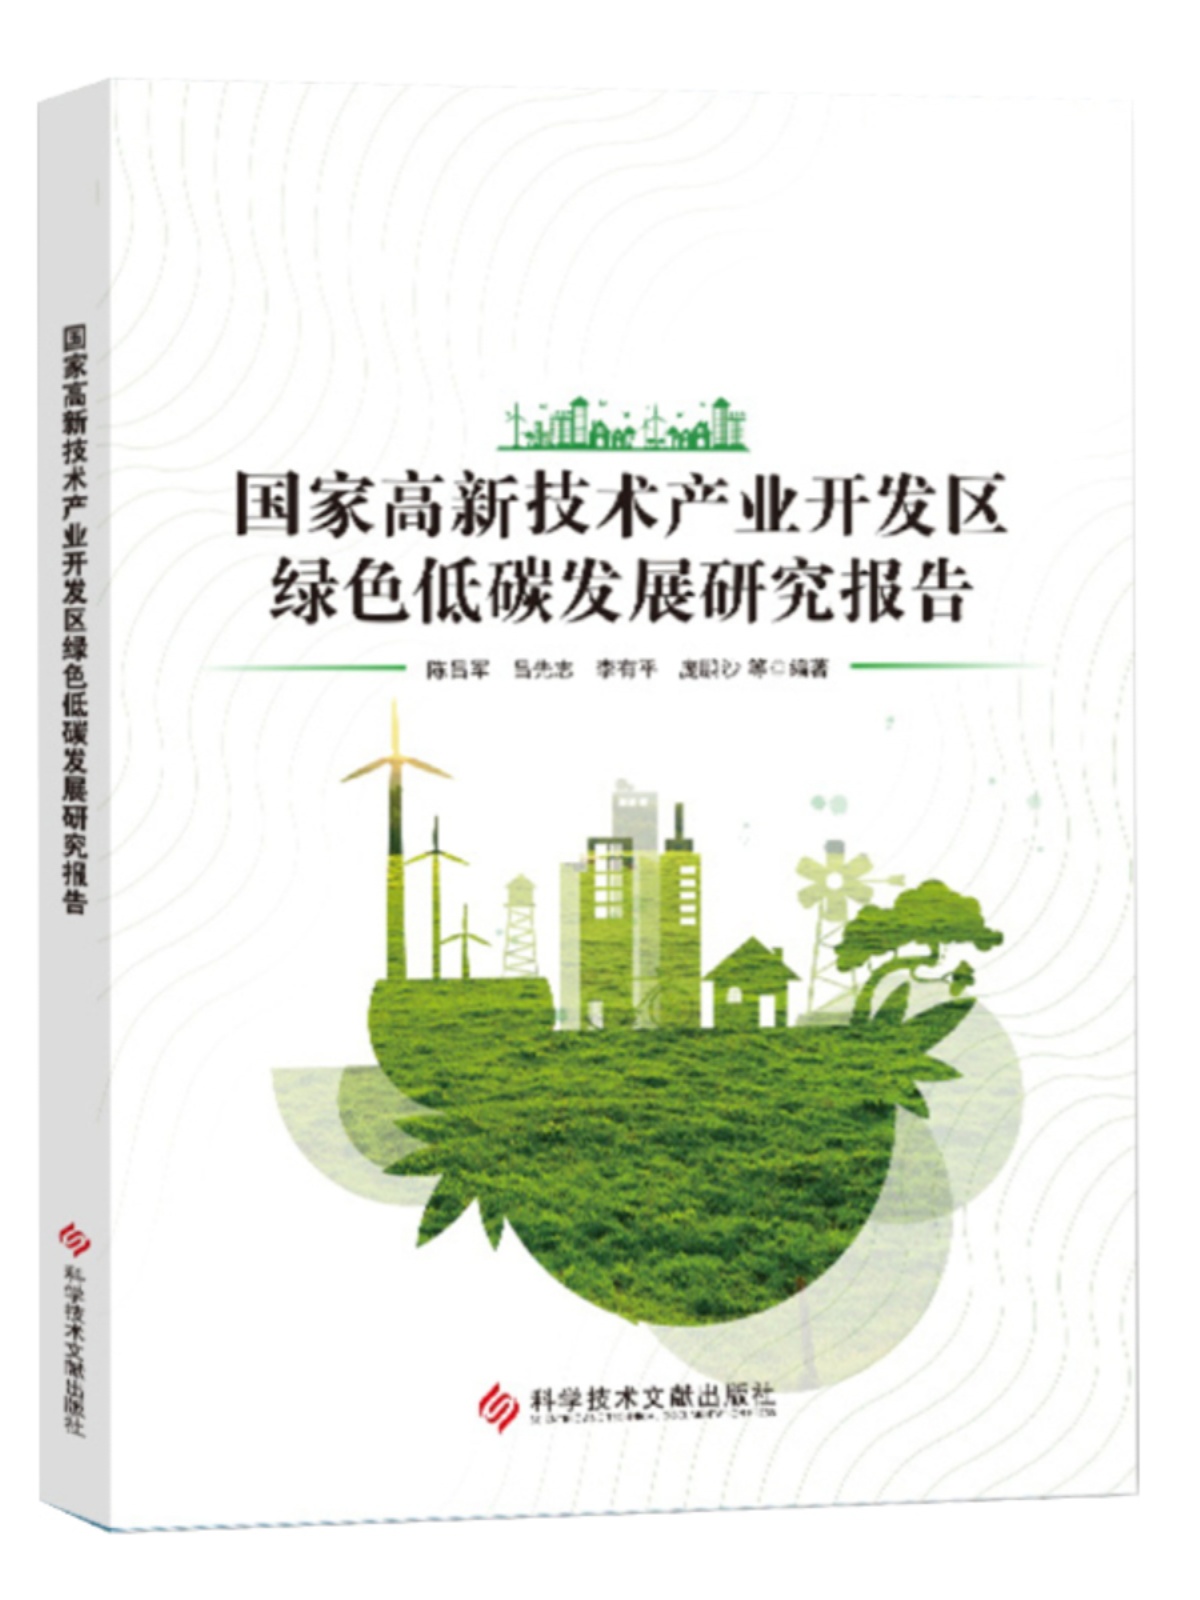 国家高新技术产业开发区绿色低碳发展研究报告 高技术产业区低碳经济经济发展研究报告 书籍 科学技术文献出版社